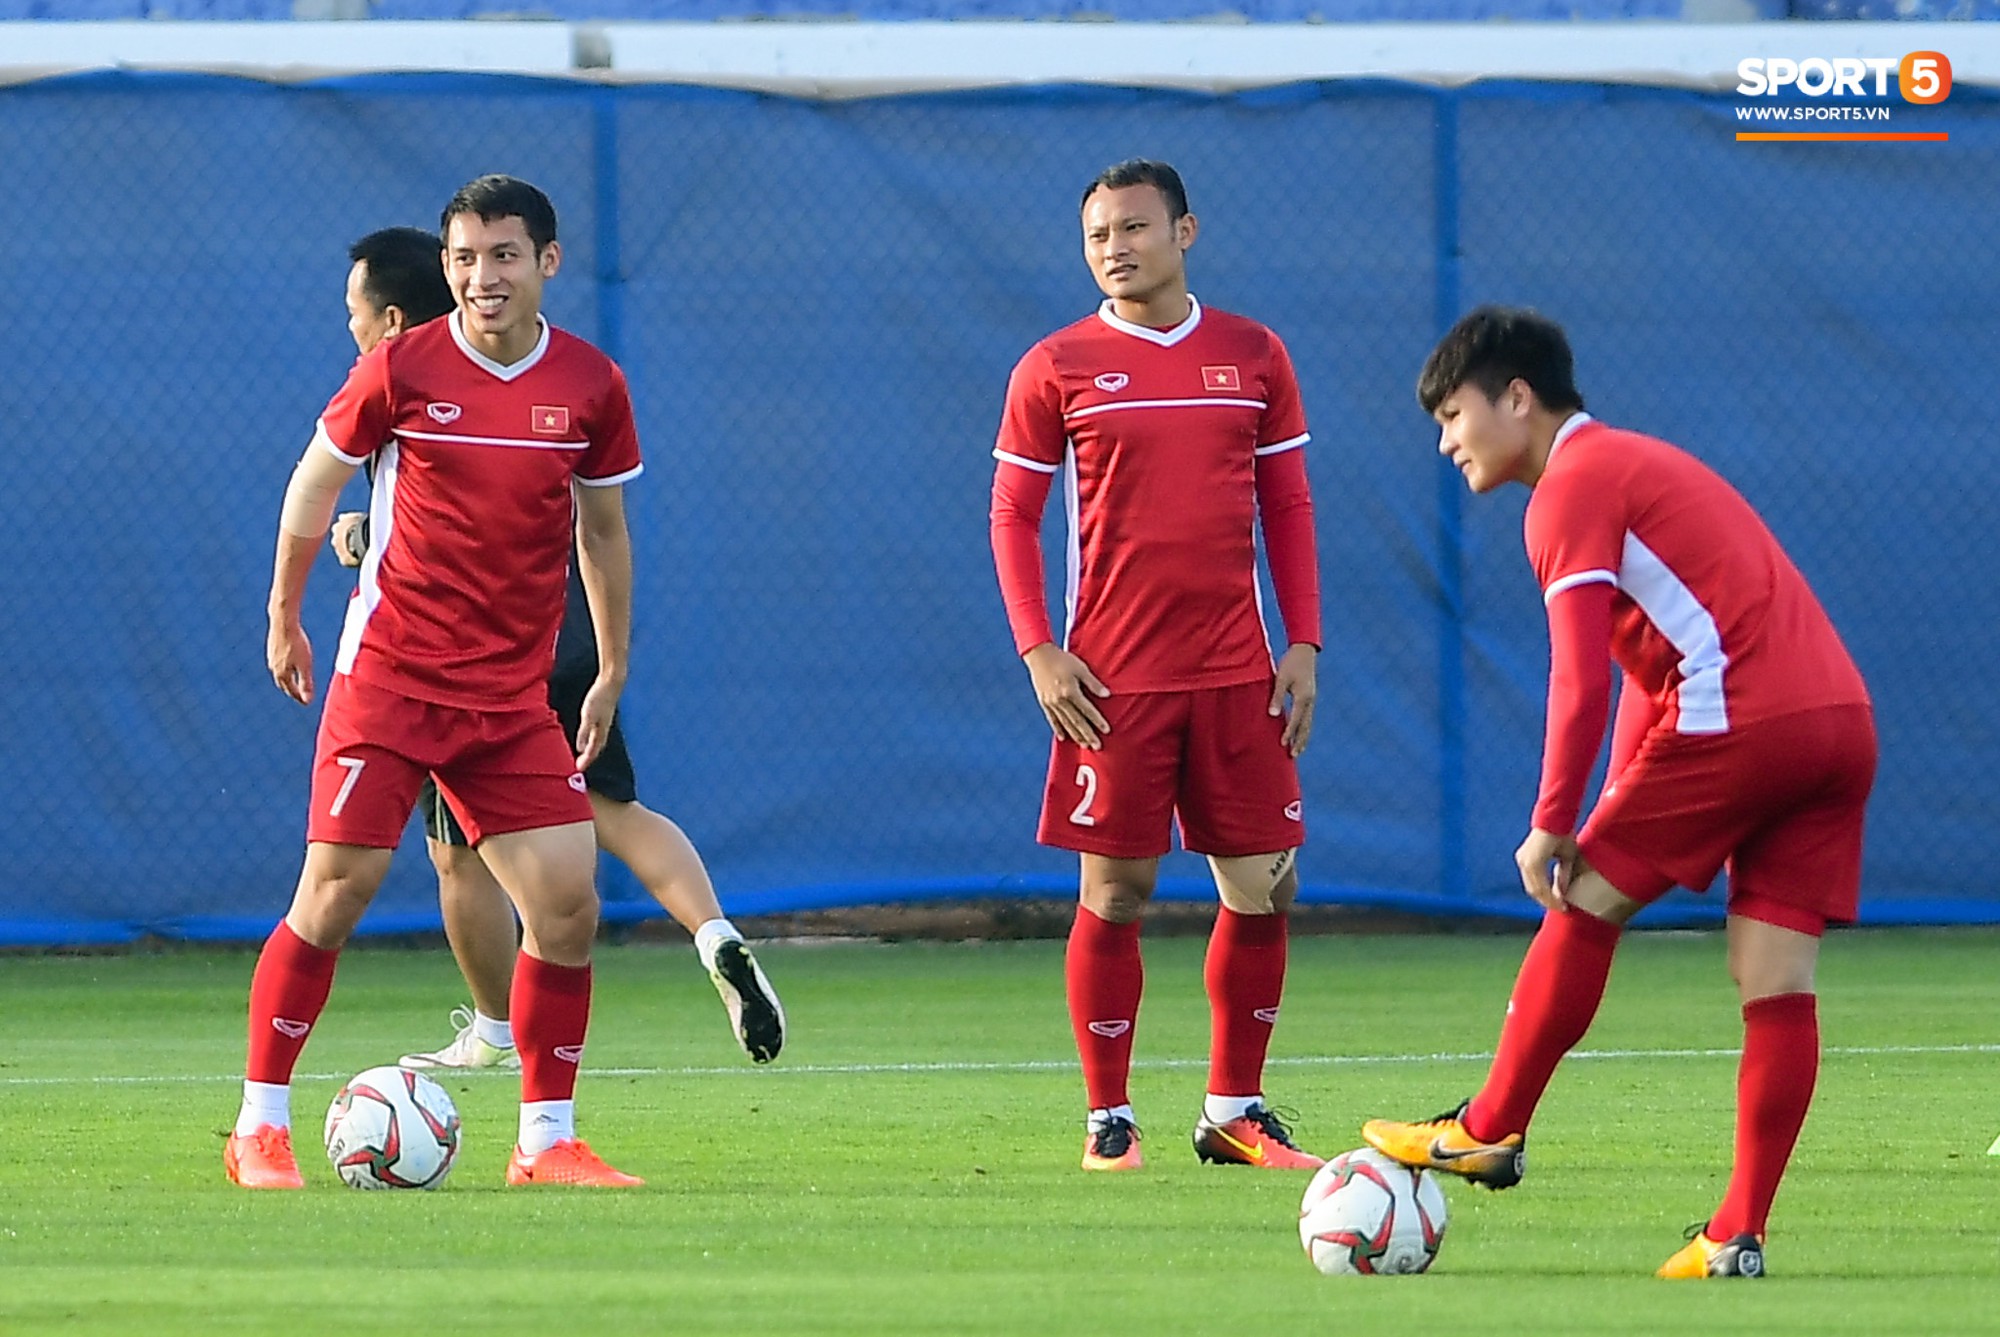 Chuyện giờ mới kể: Tuyển Việt Nam từng bị gián điệp Jordan theo dõi ở Asian Cup 2019-1